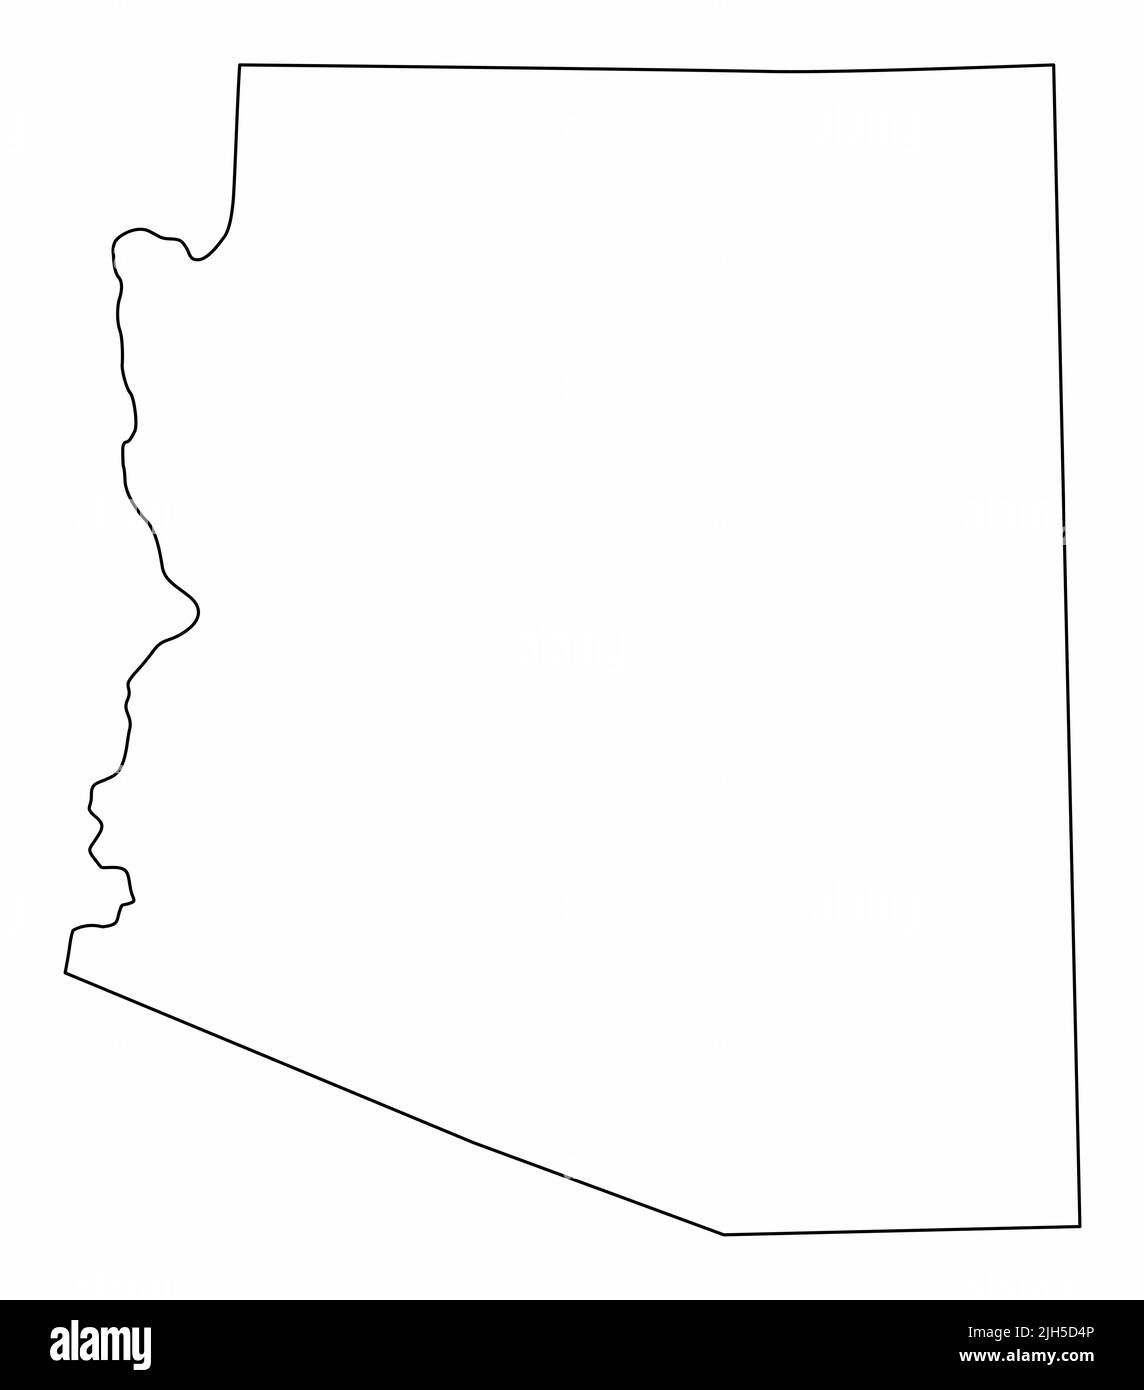 Isolierte Karte des Staates Arizona. Schwarze Umrisse auf weißem Hintergrund. Stock Vektor